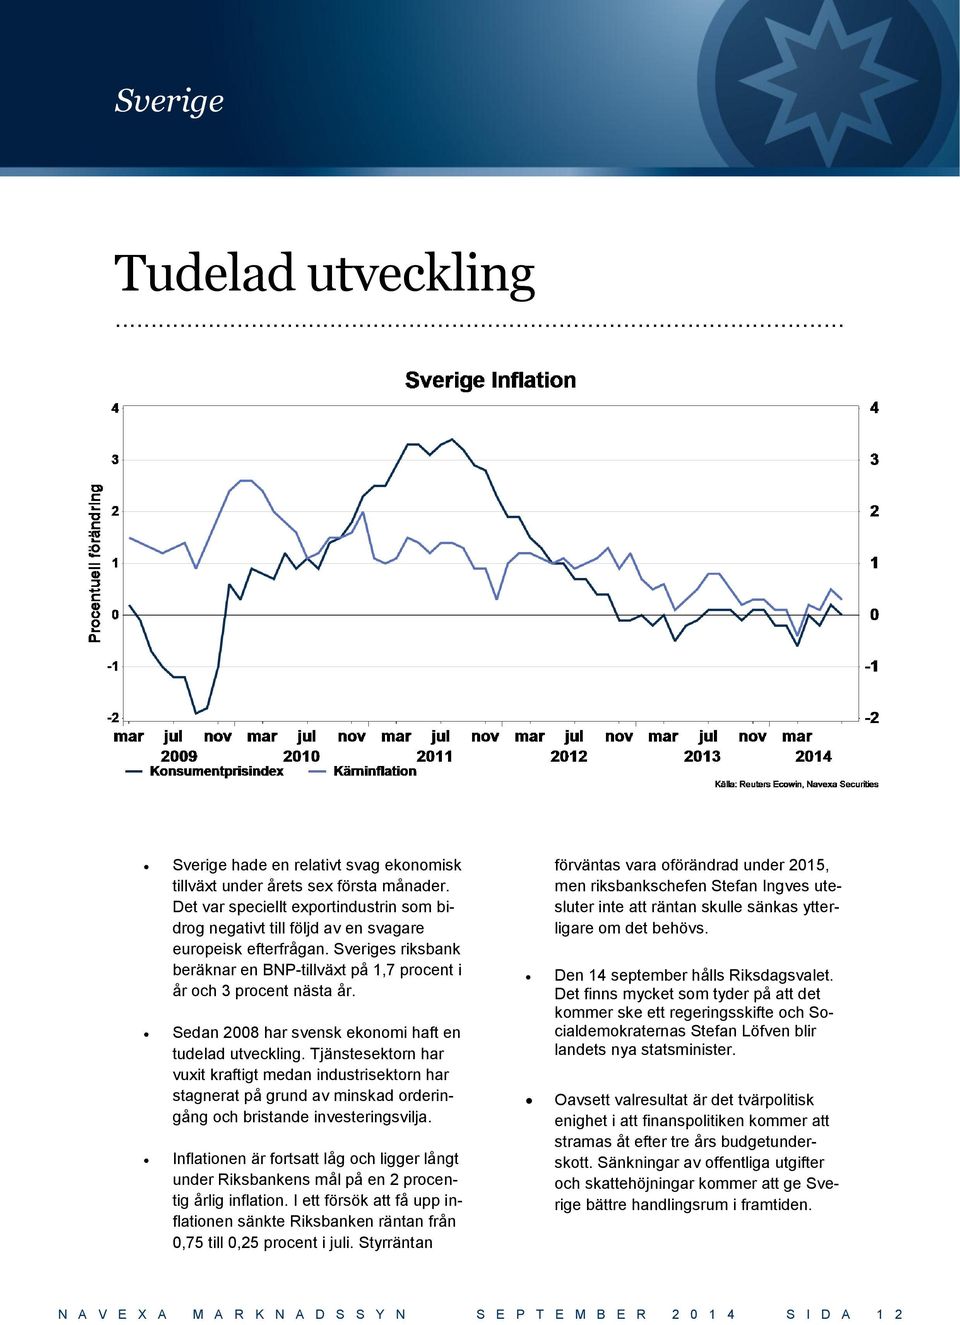 Sedan 2008 har svensk ekonomi haft en tudelad utveckling. Tjänstesektorn har vuxit kraftigt medan industrisektorn har stagnerat på grund av minskad orderingång och bristande investeringsvilja.